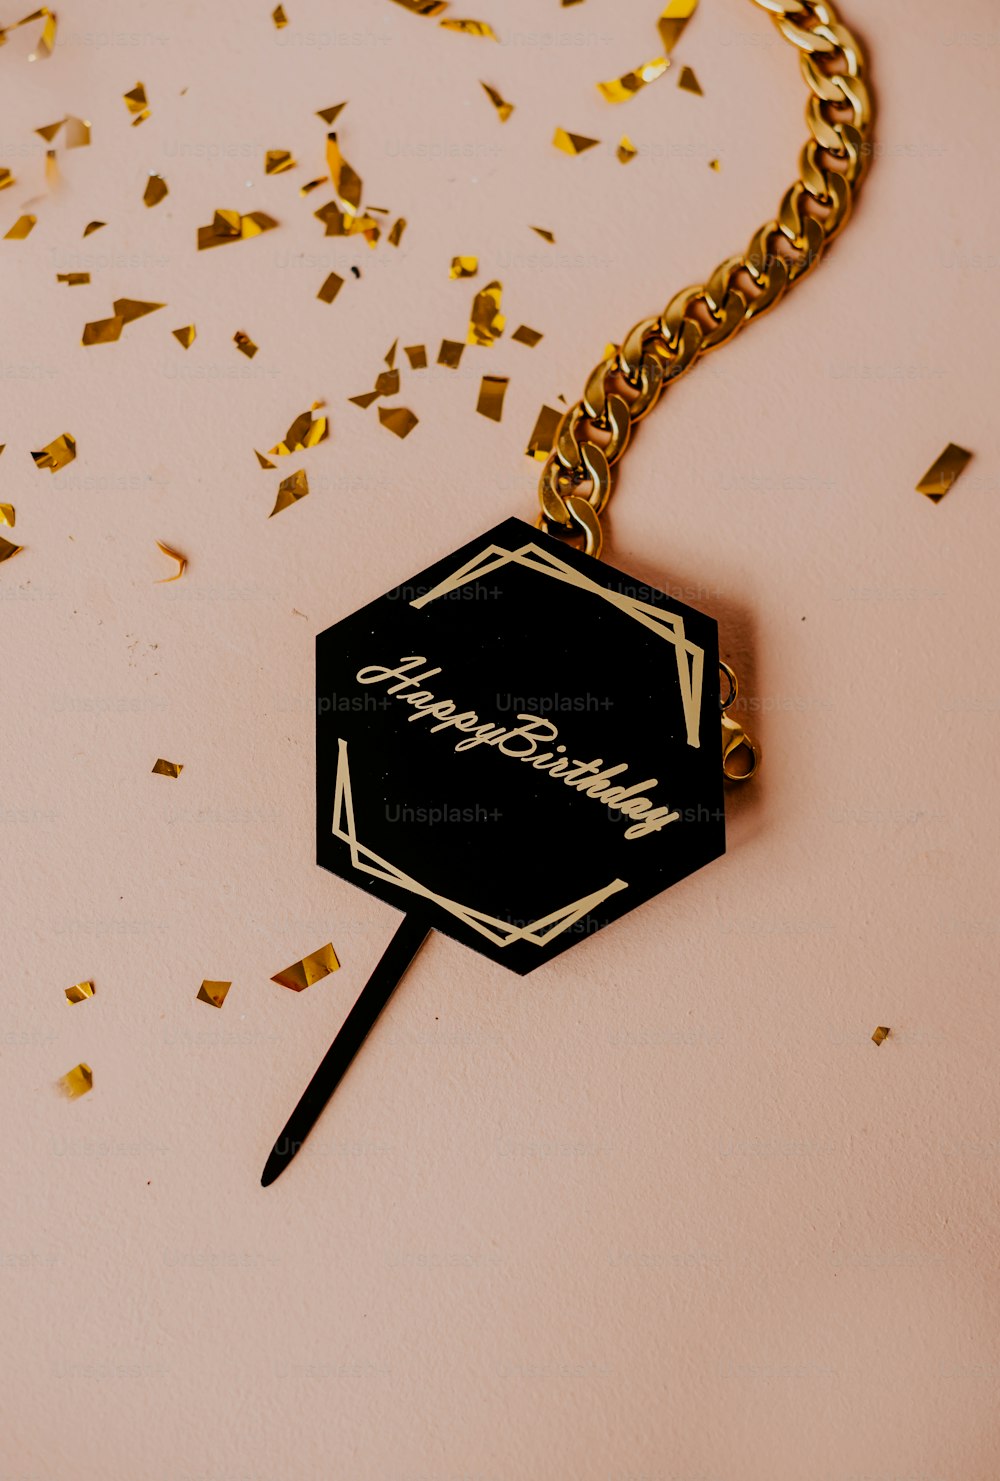 un porte-clés noir et or avec une étiquette nominative dessus